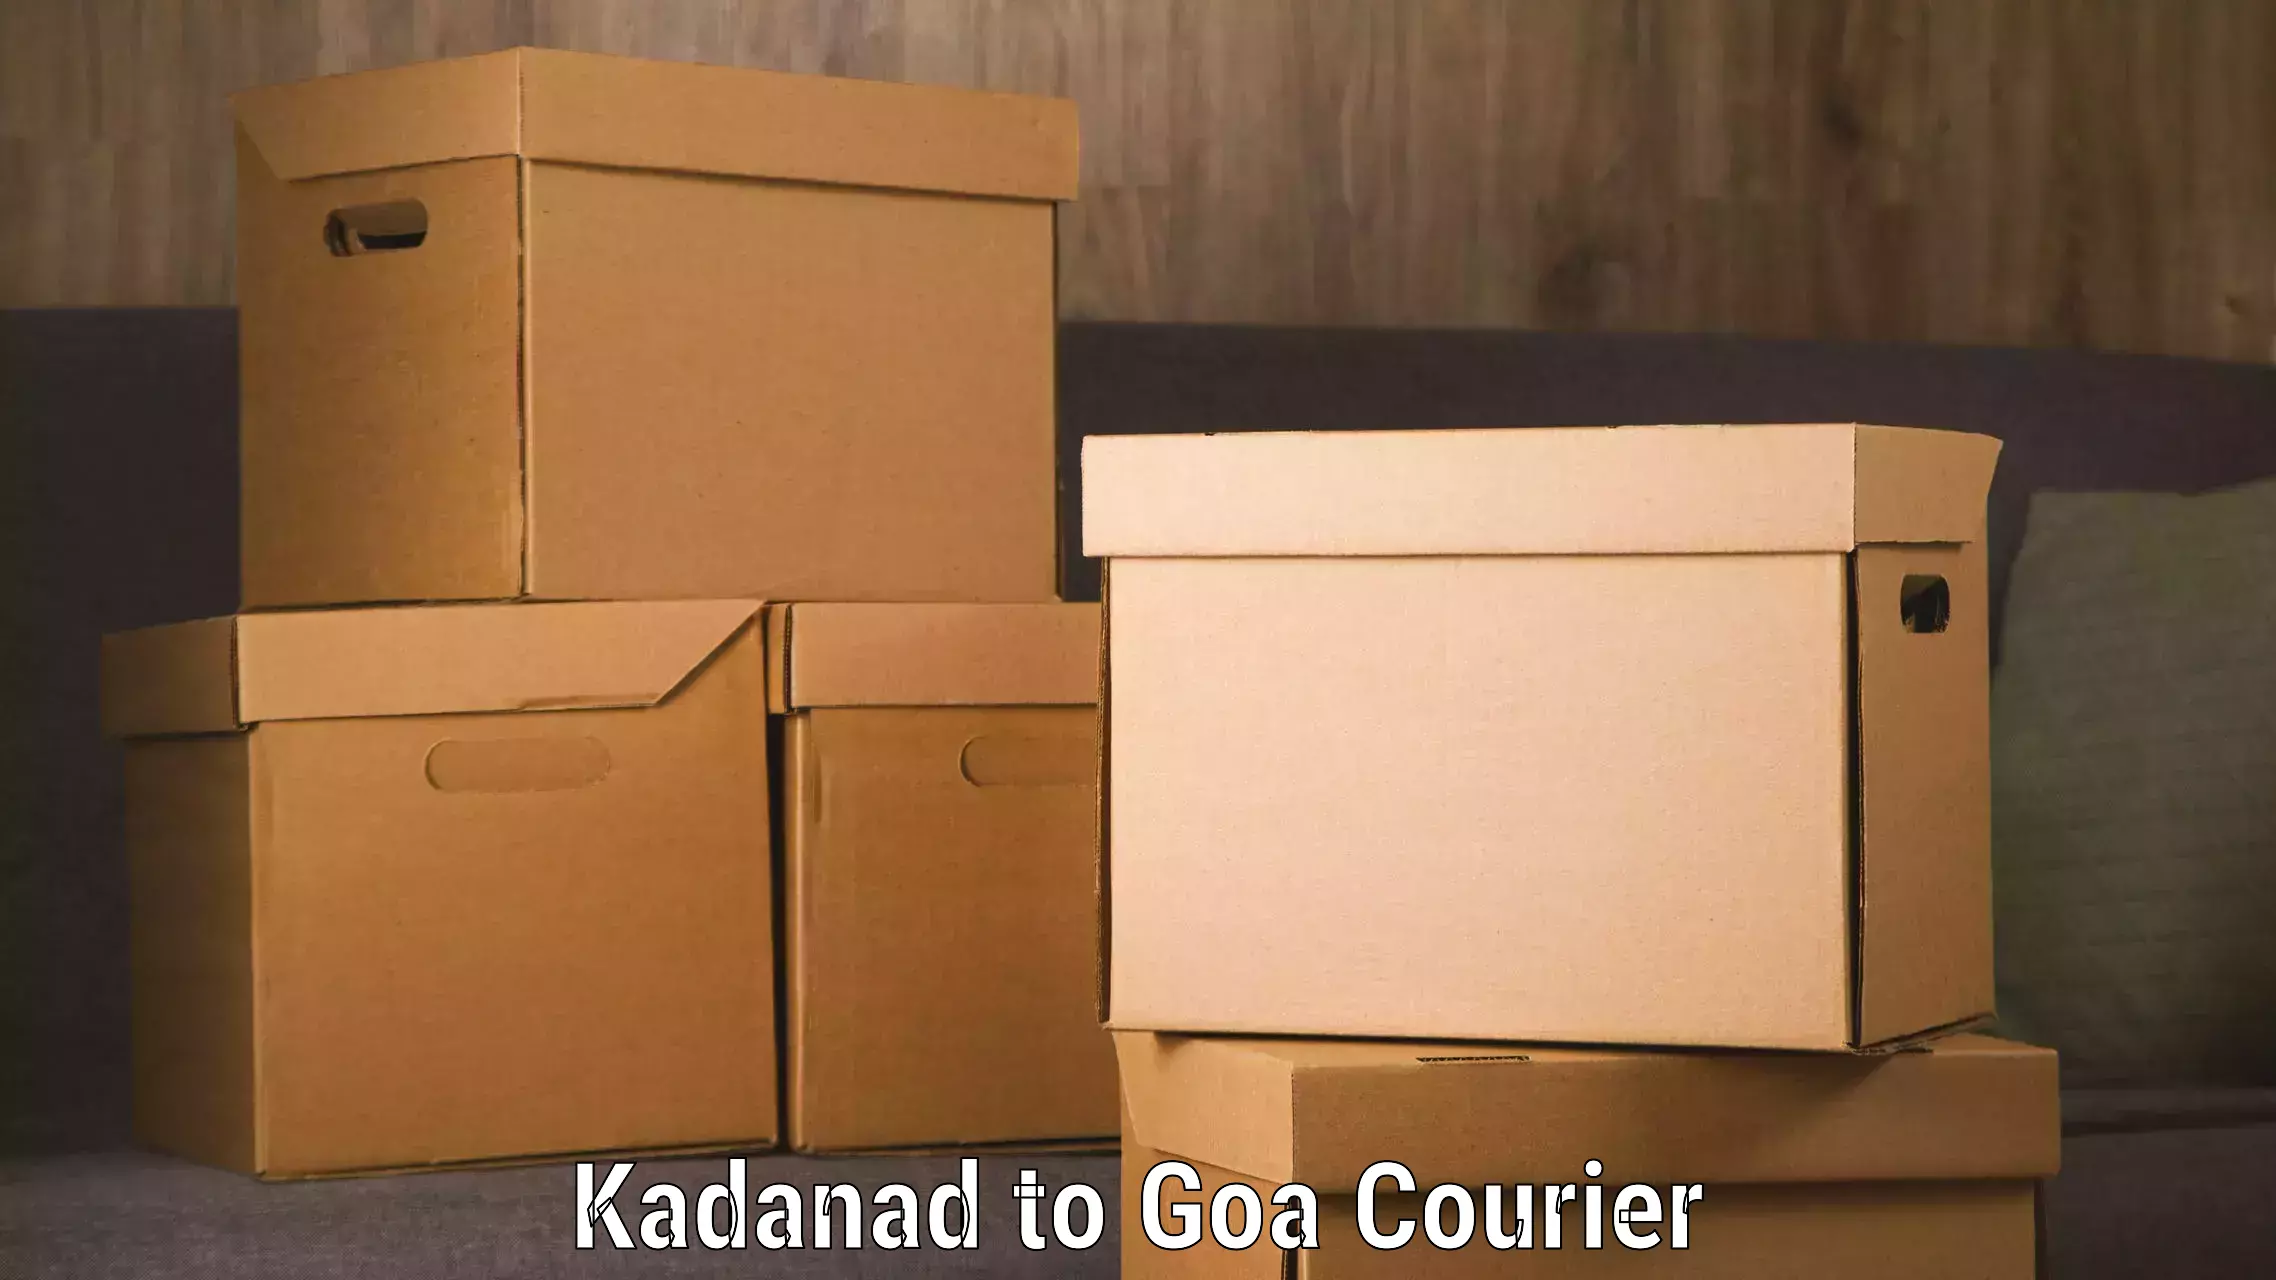 Door-to-door freight service Kadanad to Mormugao Port